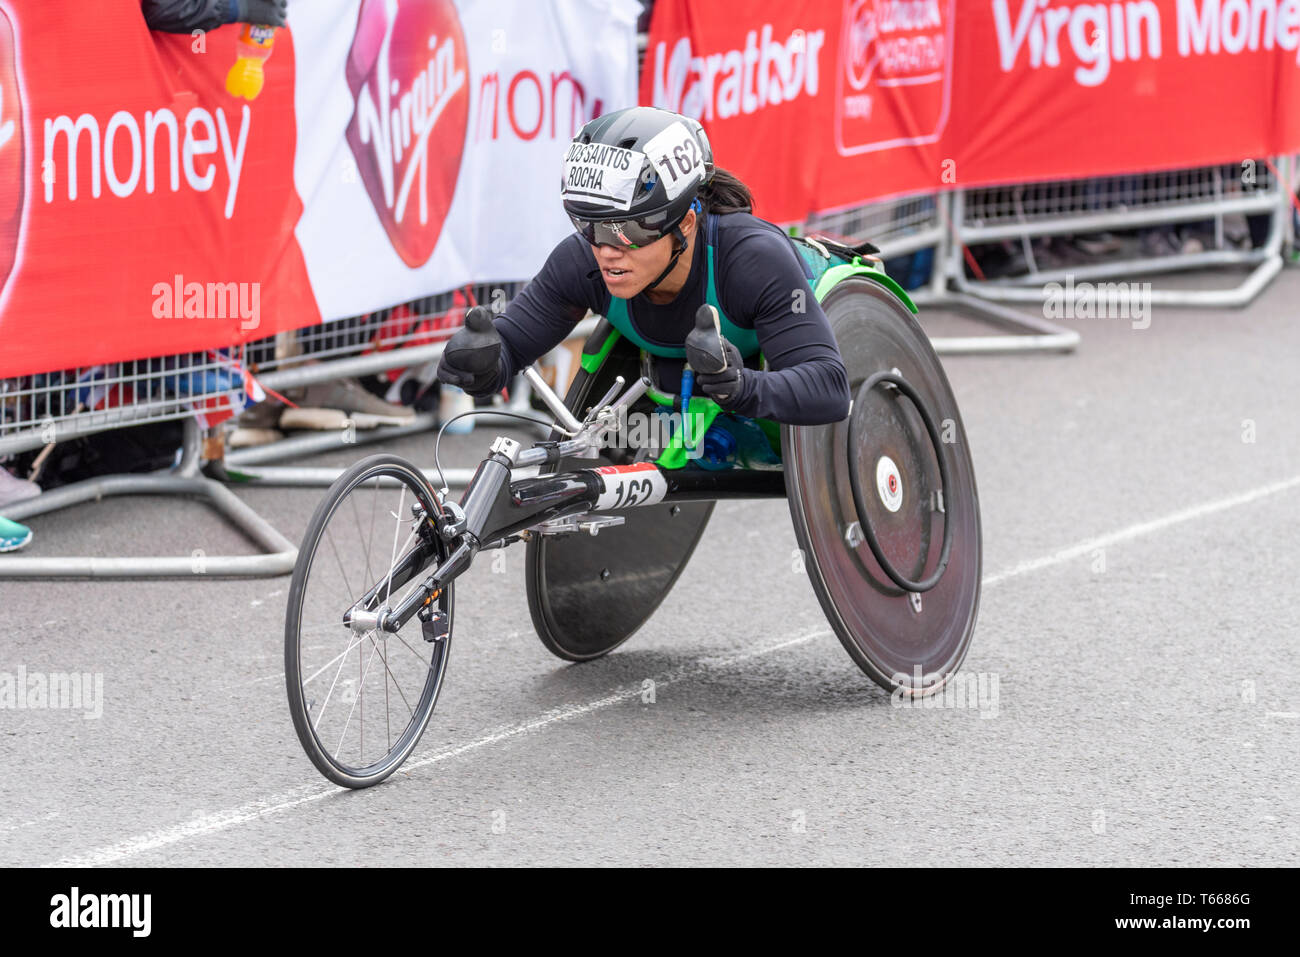 Aline dos Santos Rocha participe à la course en fauteuil roulant Virgin Money London Marathon 2019 près de Tower Bridge, Londres, Royaume-Uni Banque D'Images